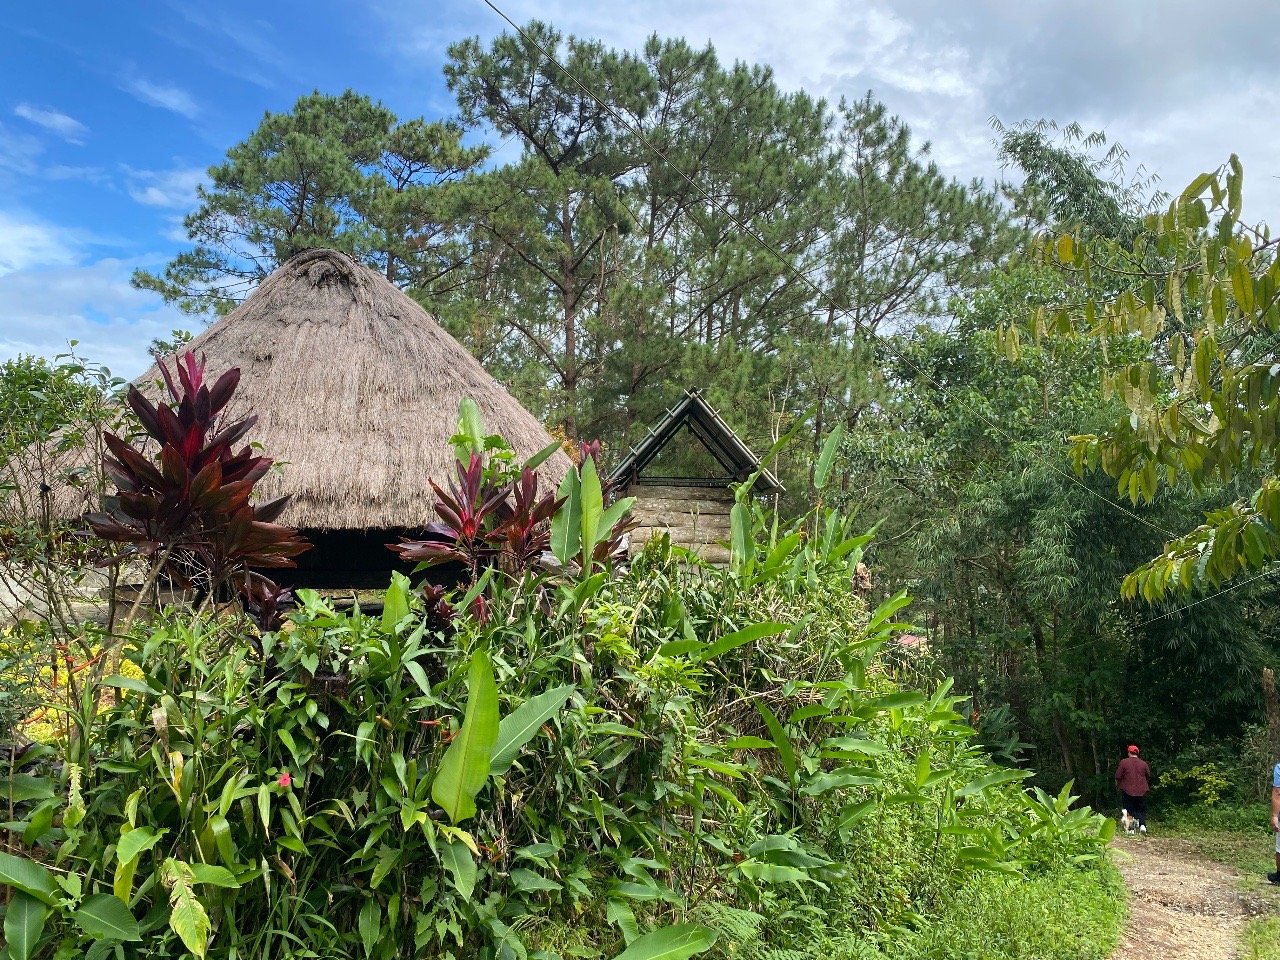 A typical Cordillera hut in Winaca Eco-cultural Village